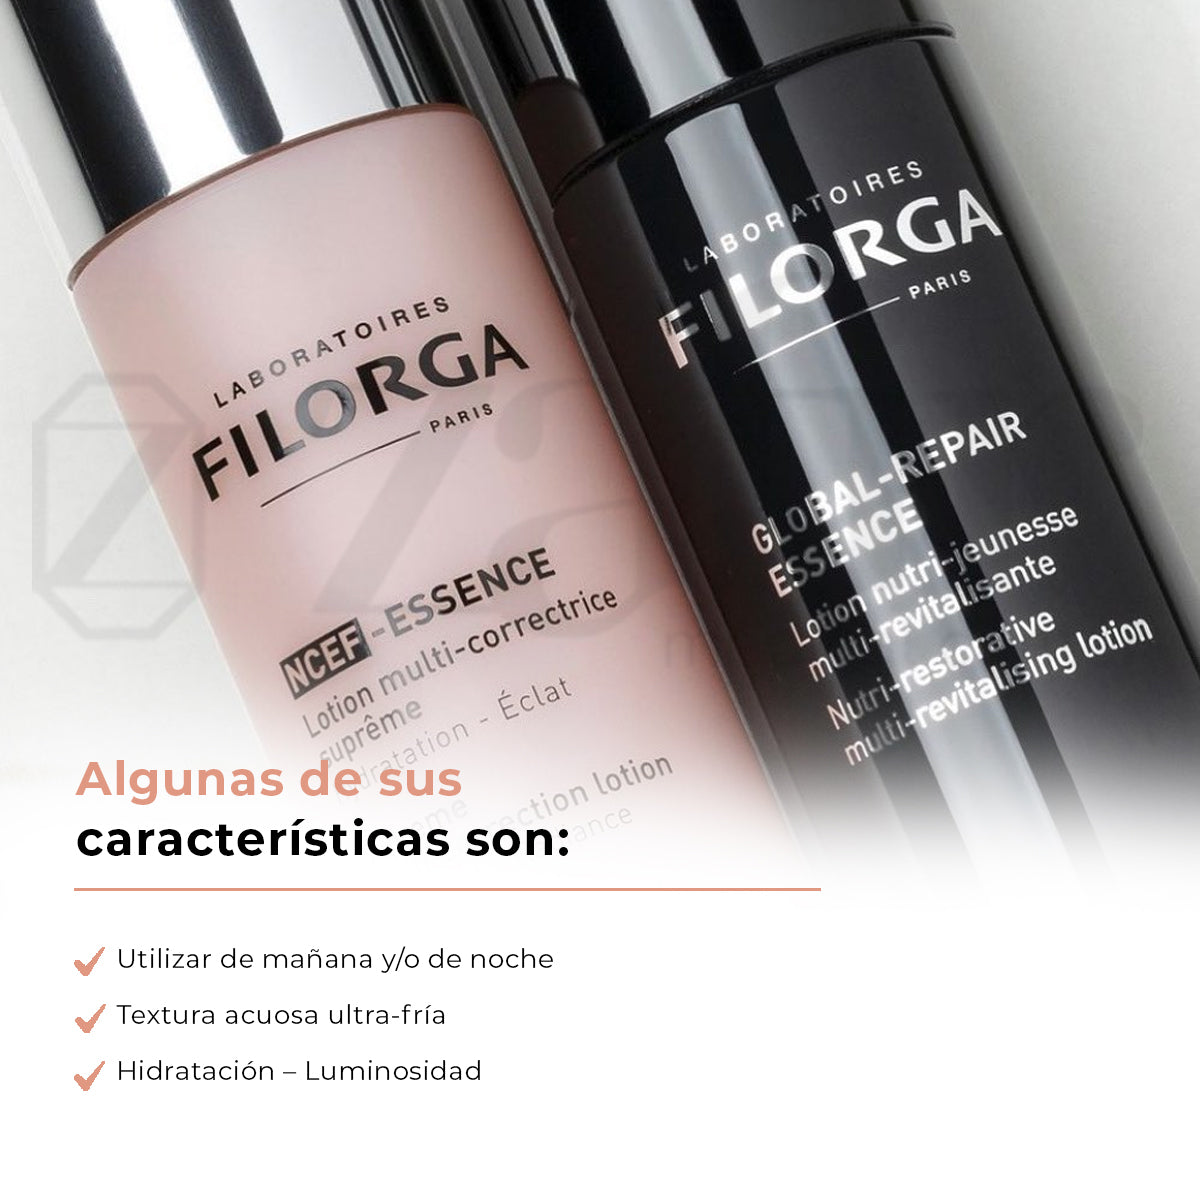 FILORGA Ncef-essence: esencia regeneradora antiedad 150ml